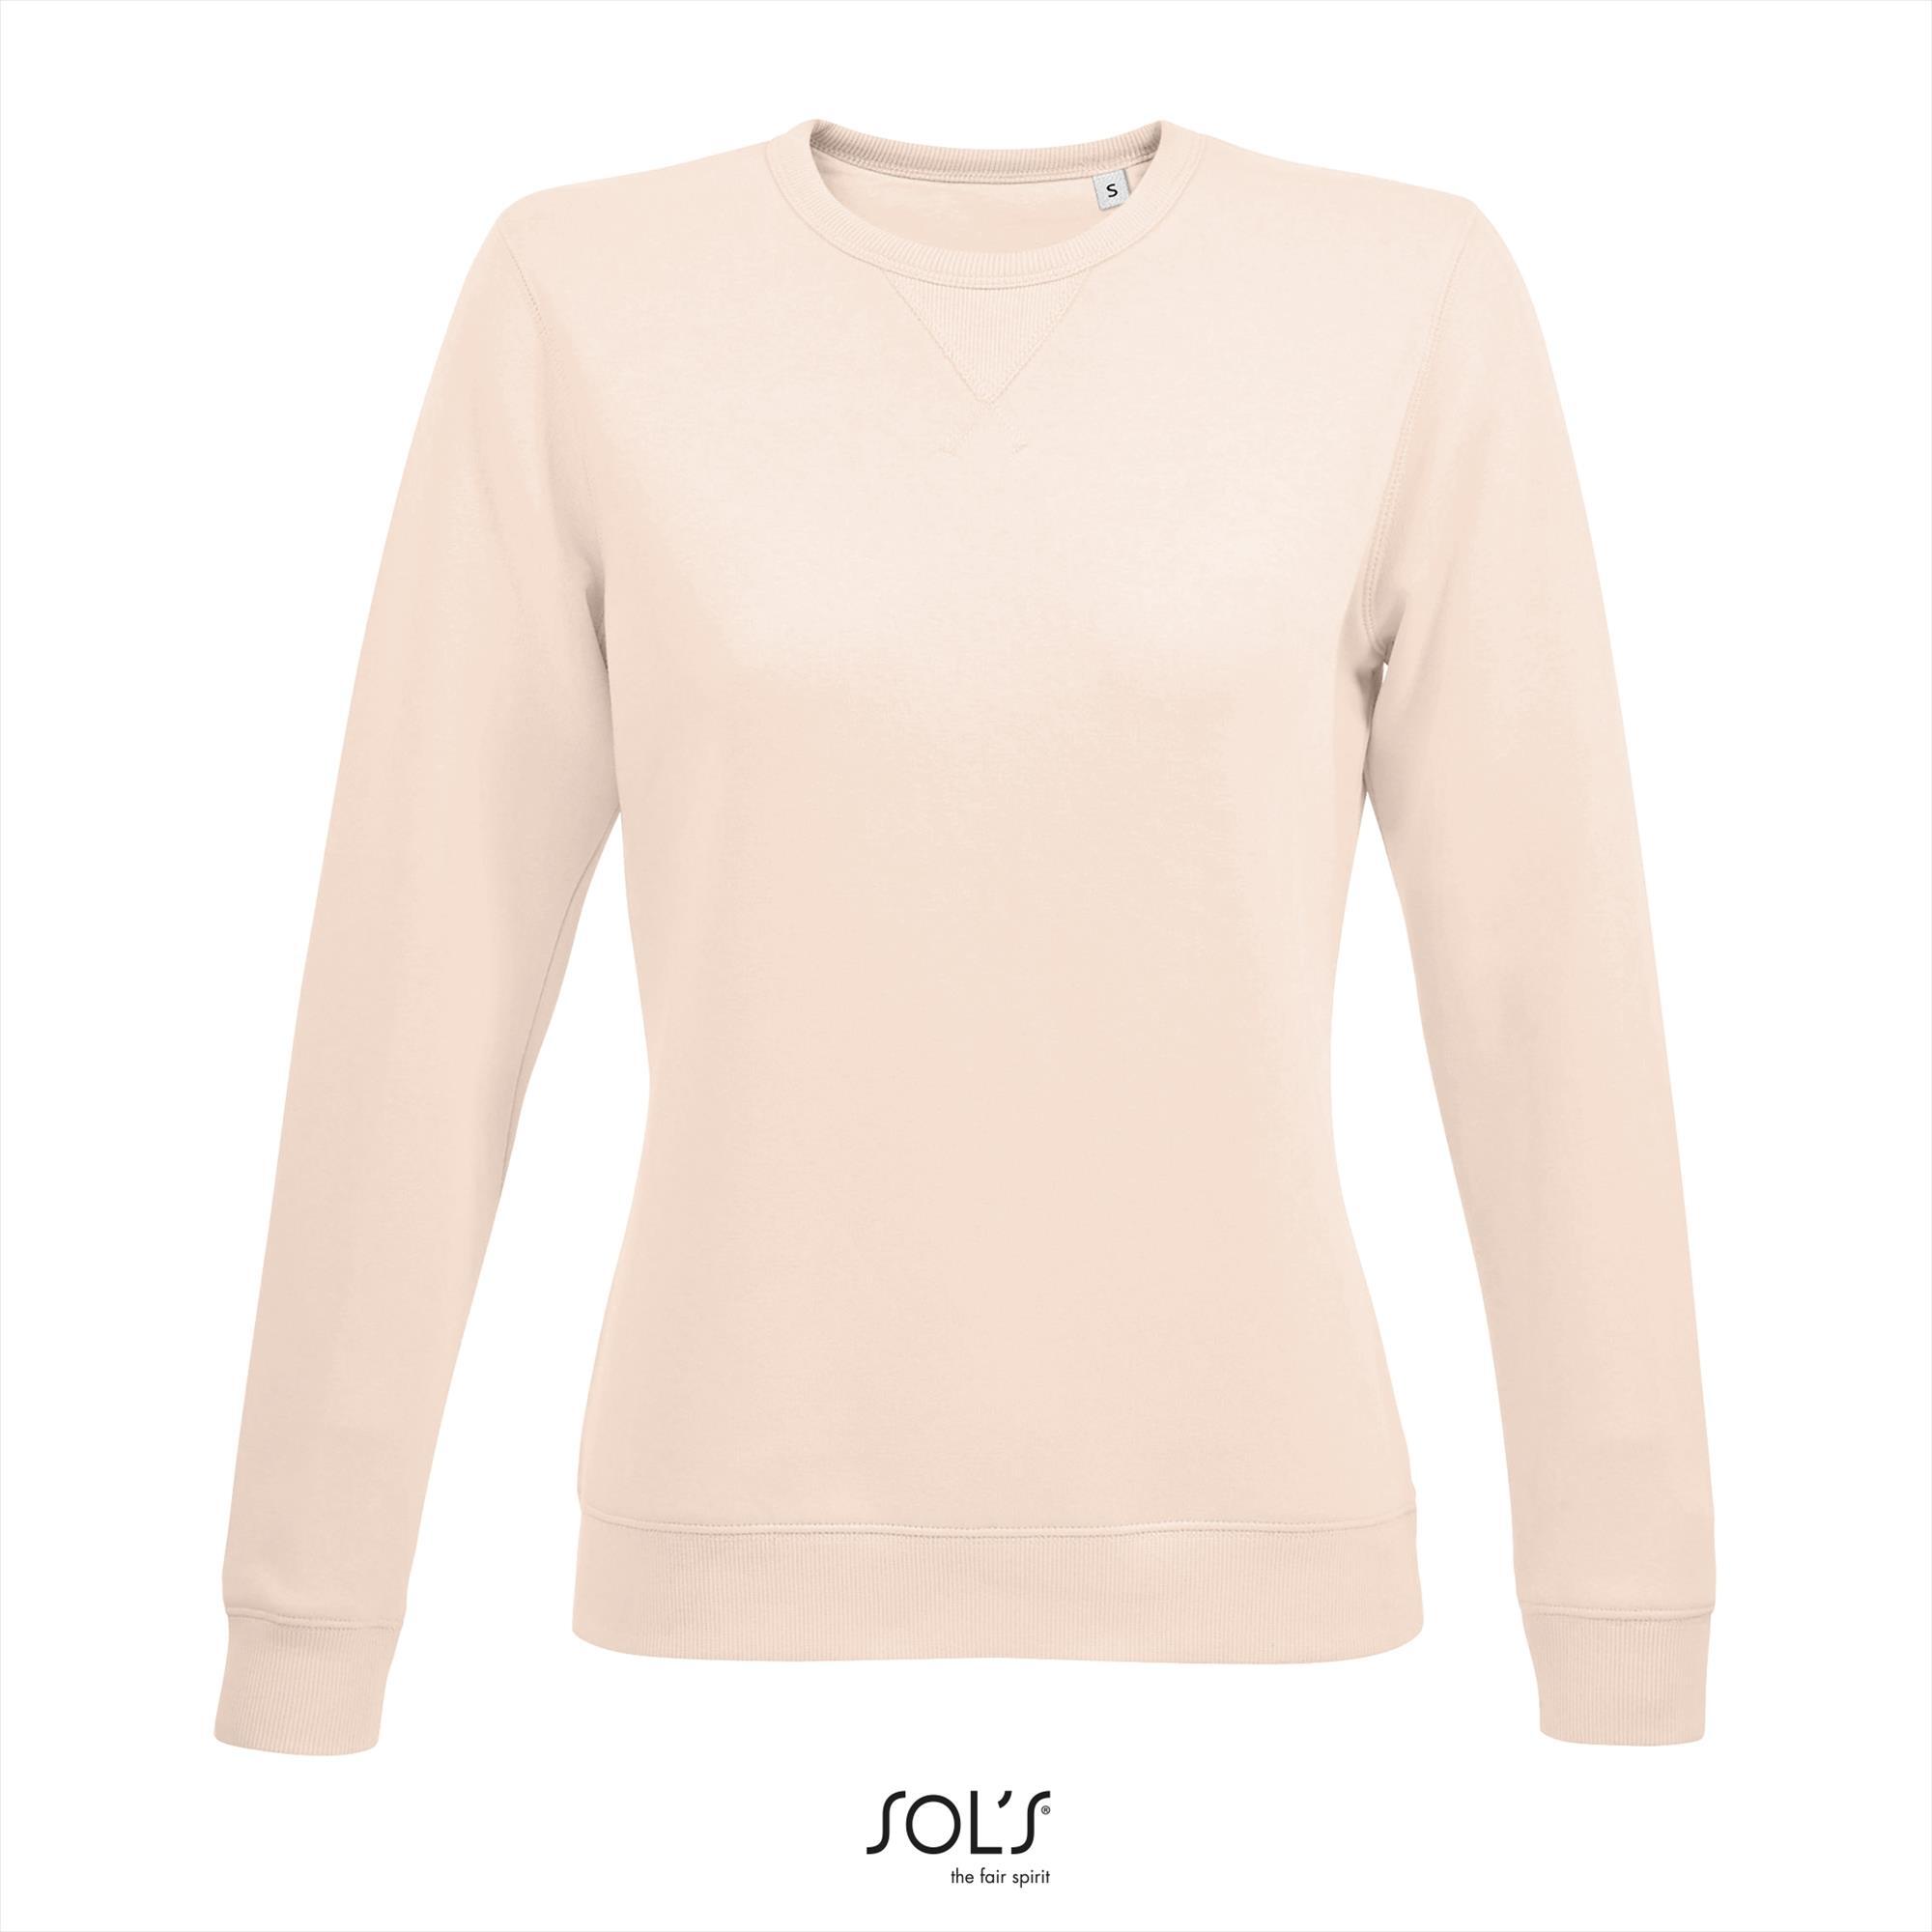 Dames sweatshirt Sweaters voor Dames bedrukbaar romig roze